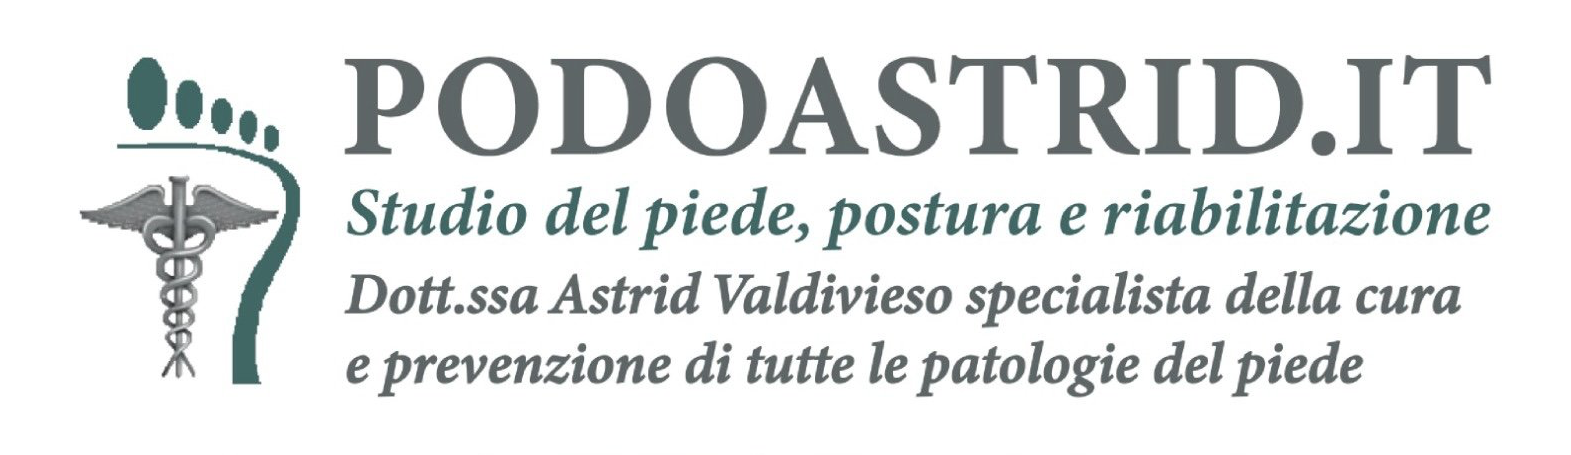 DOTT.SSA ASTRID VALDIVIESO - LOGO